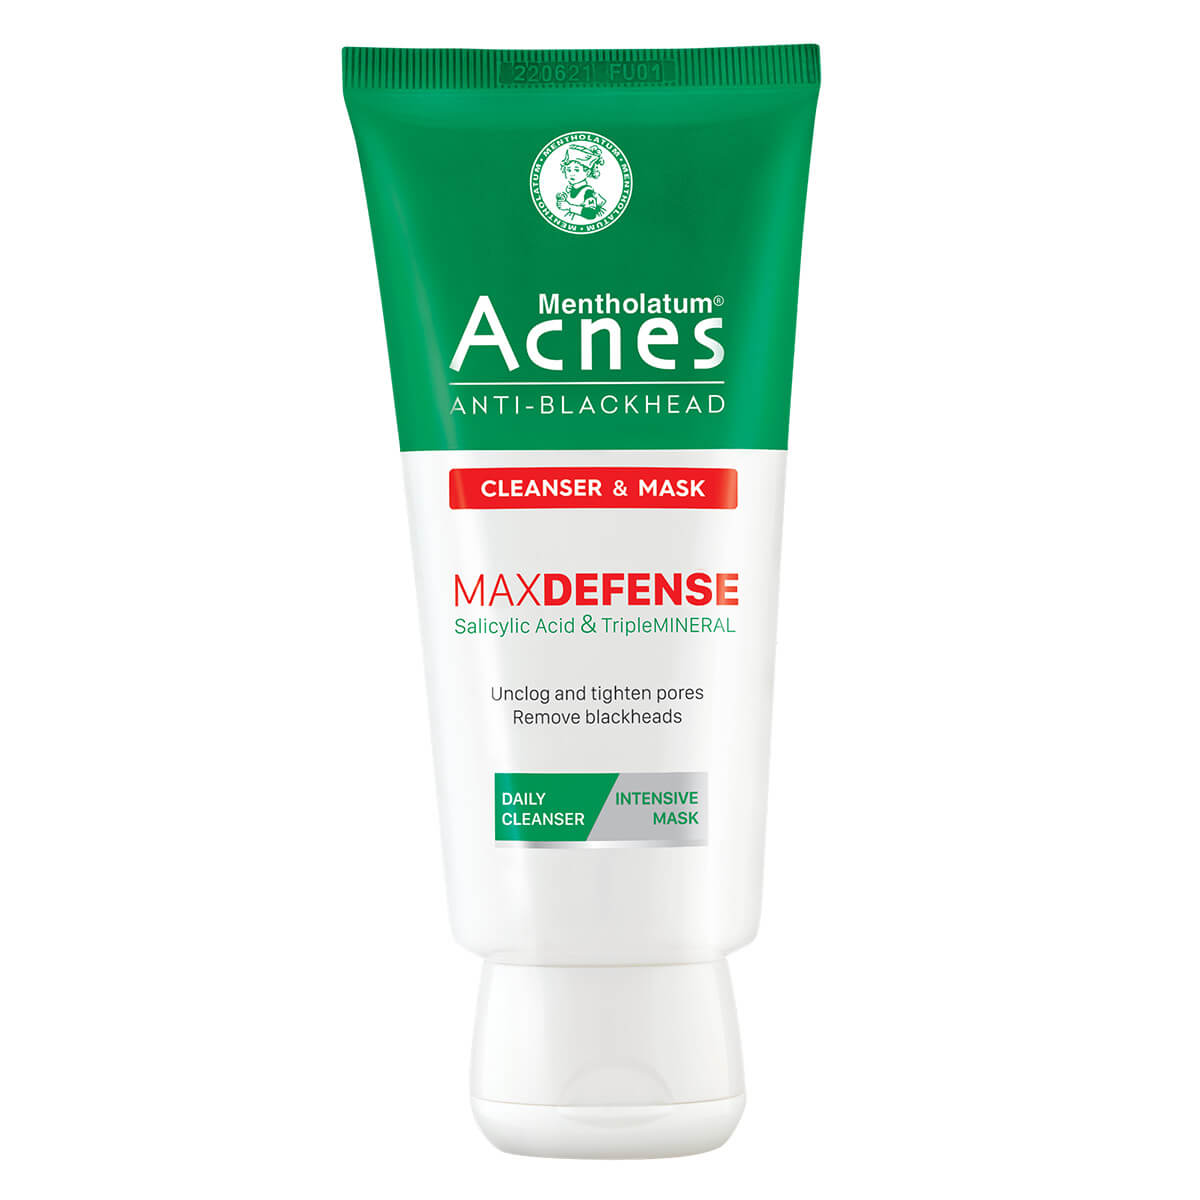 Acnes Anti-Blackhead Cleanser & Mask – Kem Rửa Mặt & Mặt Nạ Ngăn Ngừa Mụn Đầu Đen